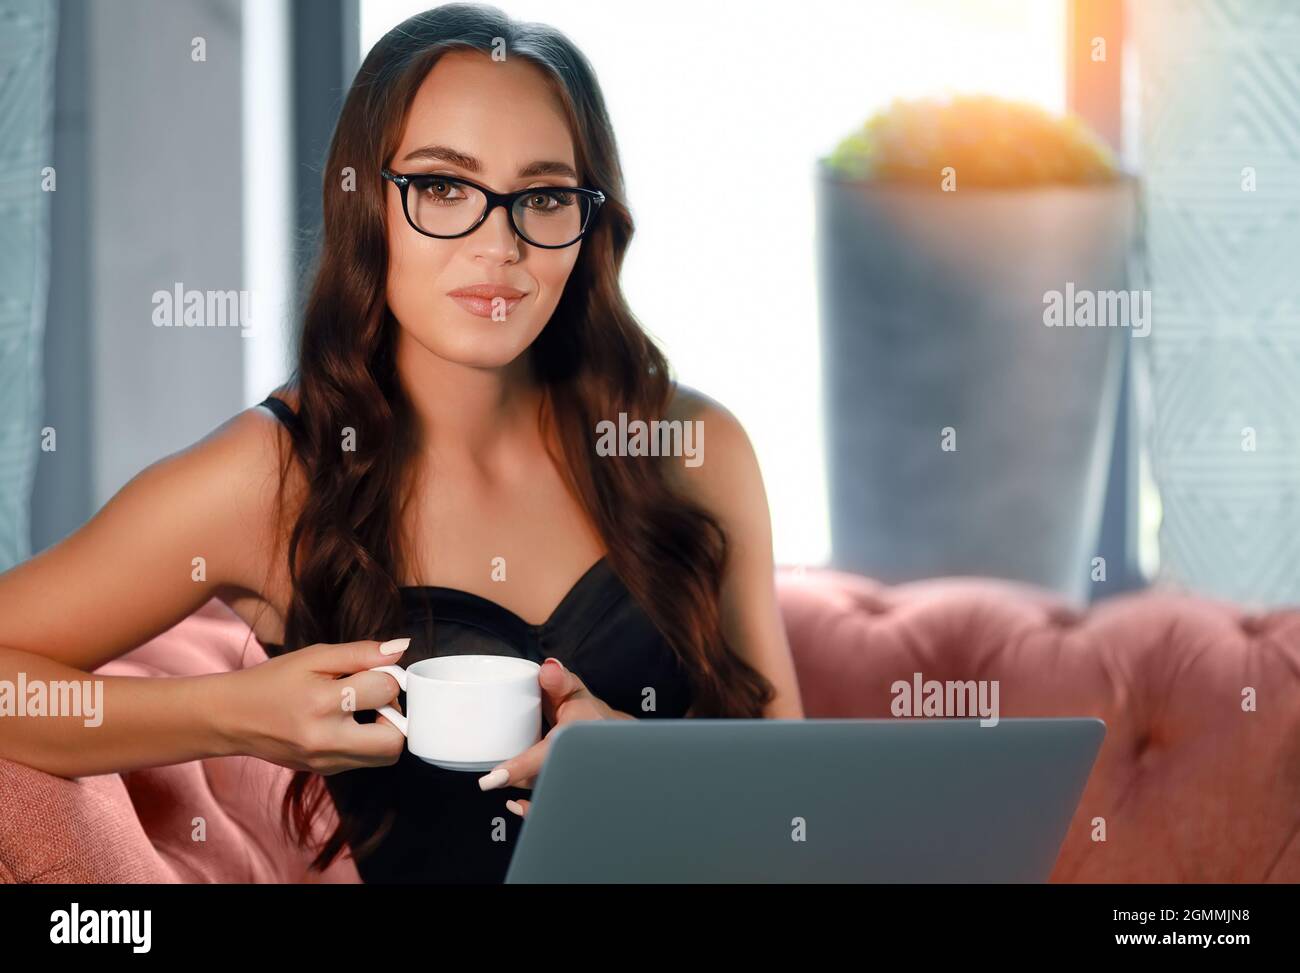 Una hermosa joven europea en vasos de 20-30 años se sienta en el sofá y sostiene una taza de café o té. Una chica hermosa trabaja remotamente en un ordenador portátil. Foto de stock